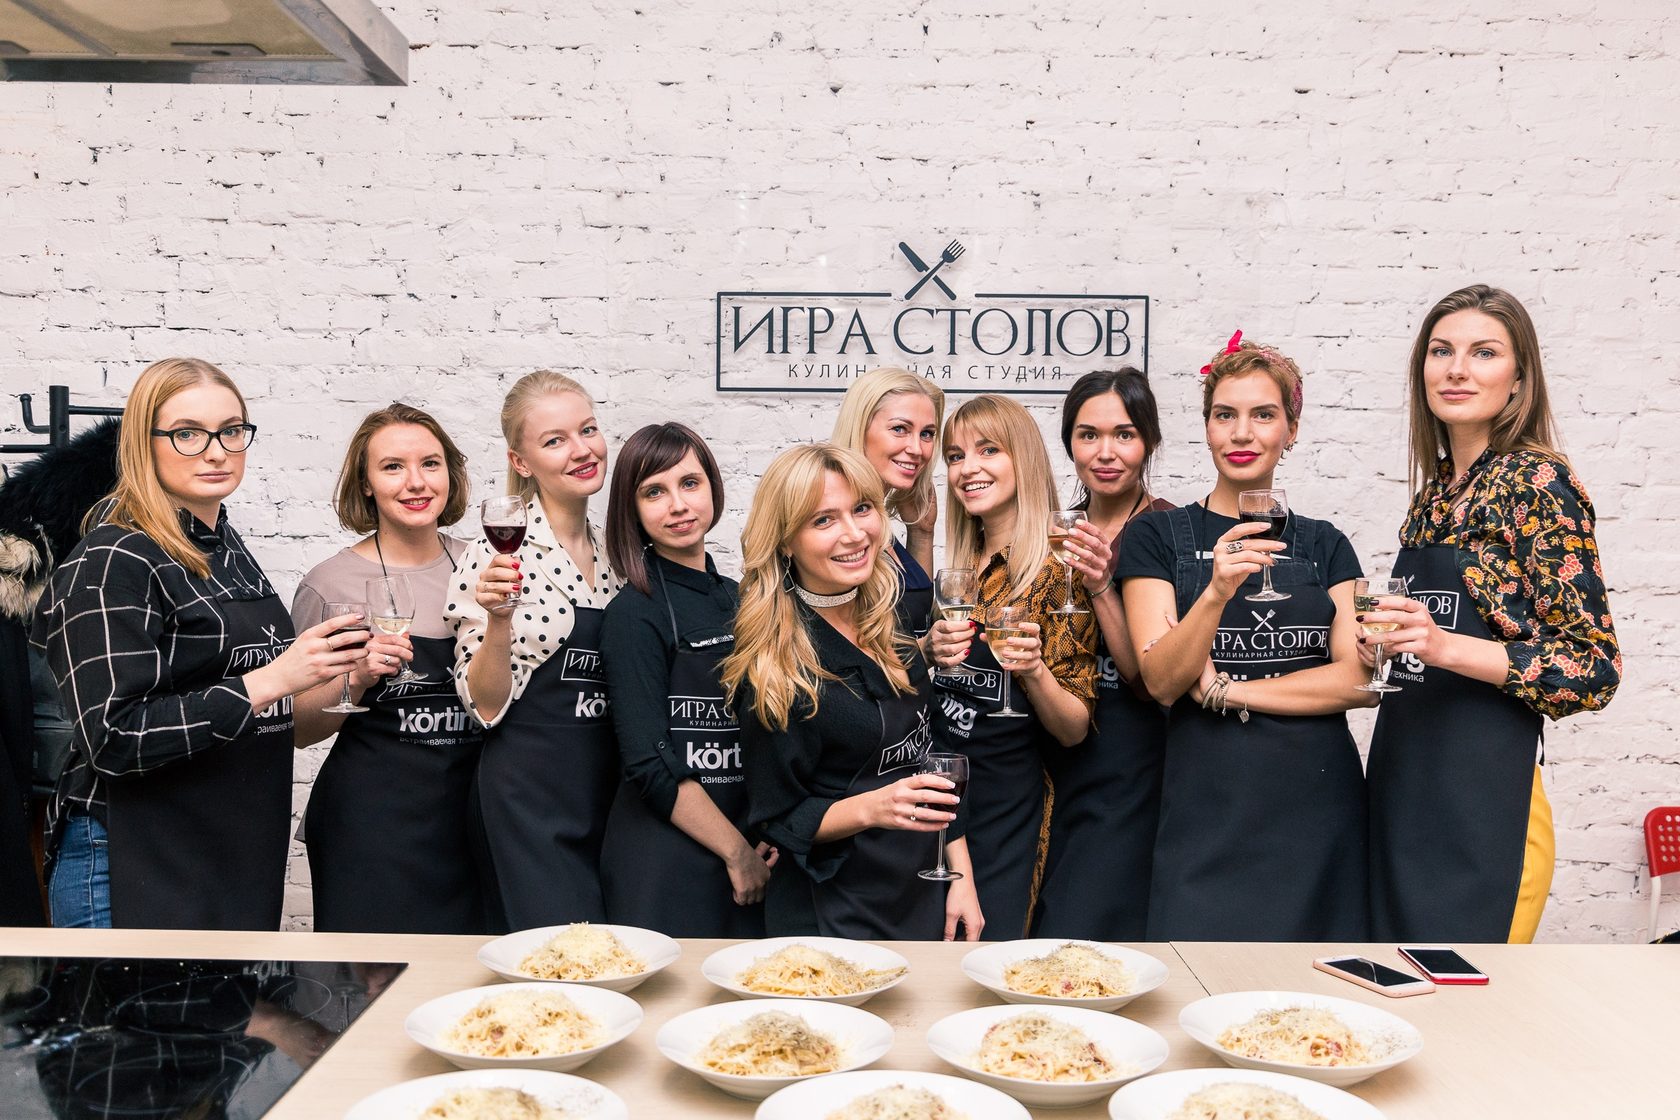 ТОП-5 кулинарных мастер-классов в Санкт-Петербурге, которые стоит посетить каждому